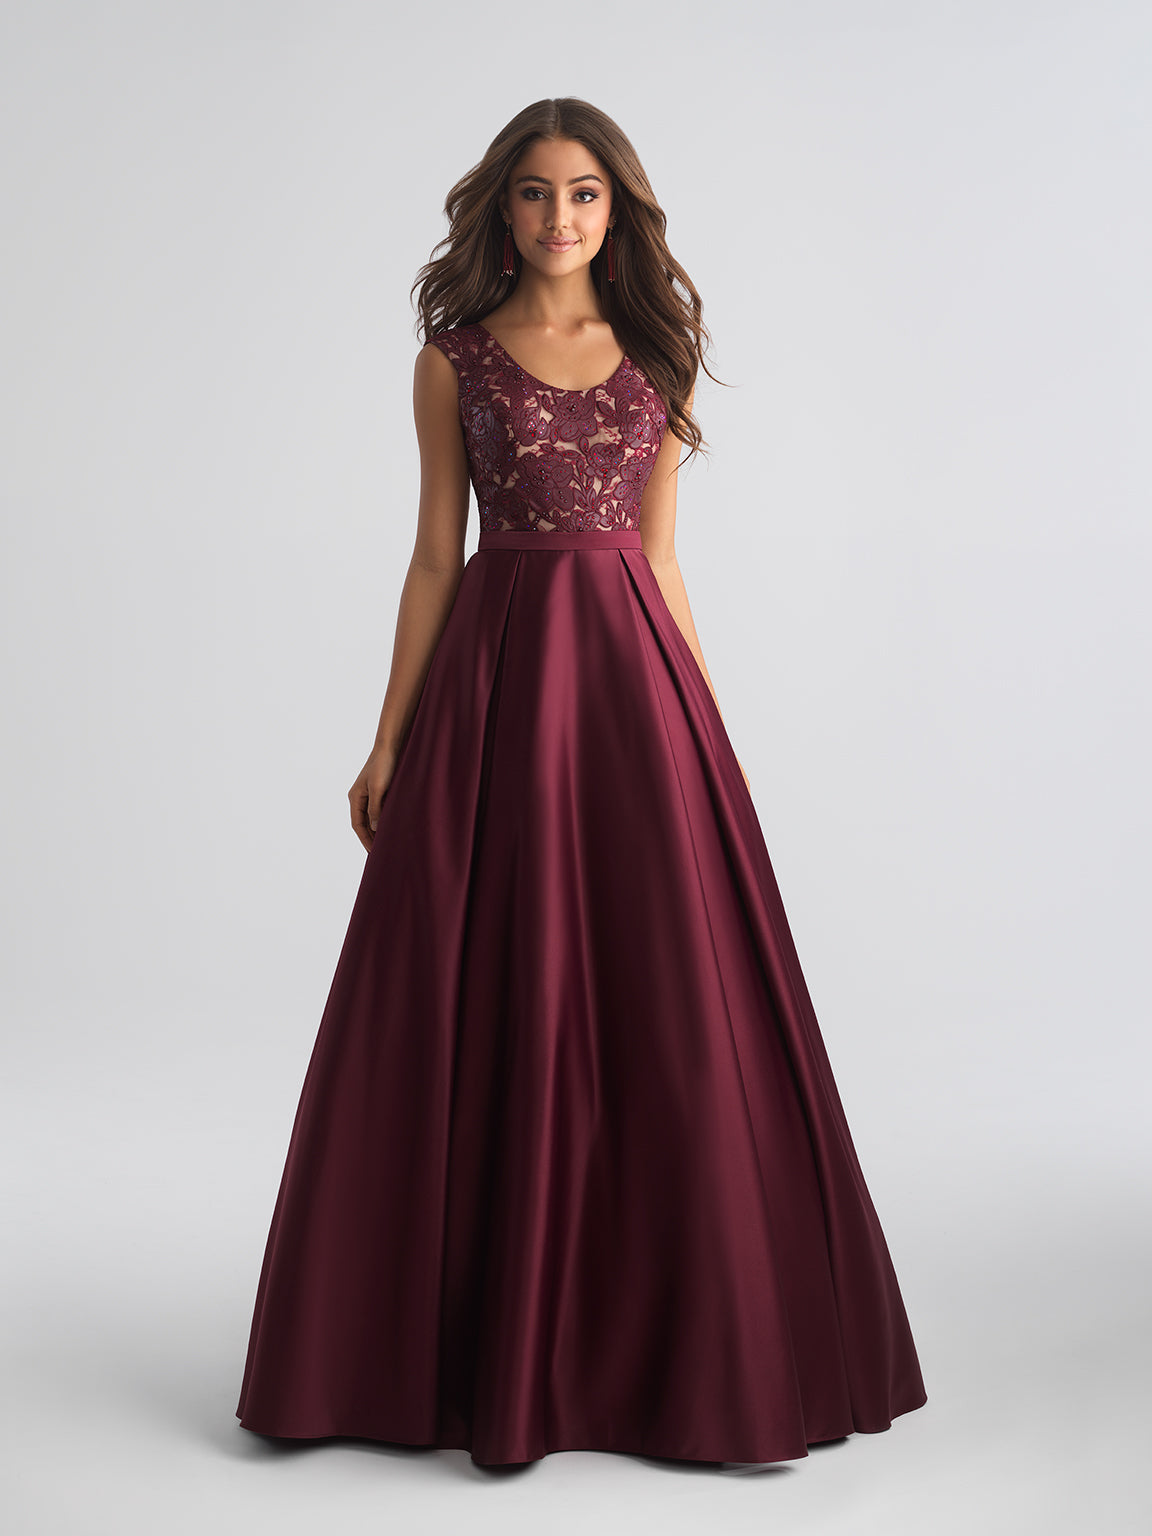 18-654 Prom Dress Wine